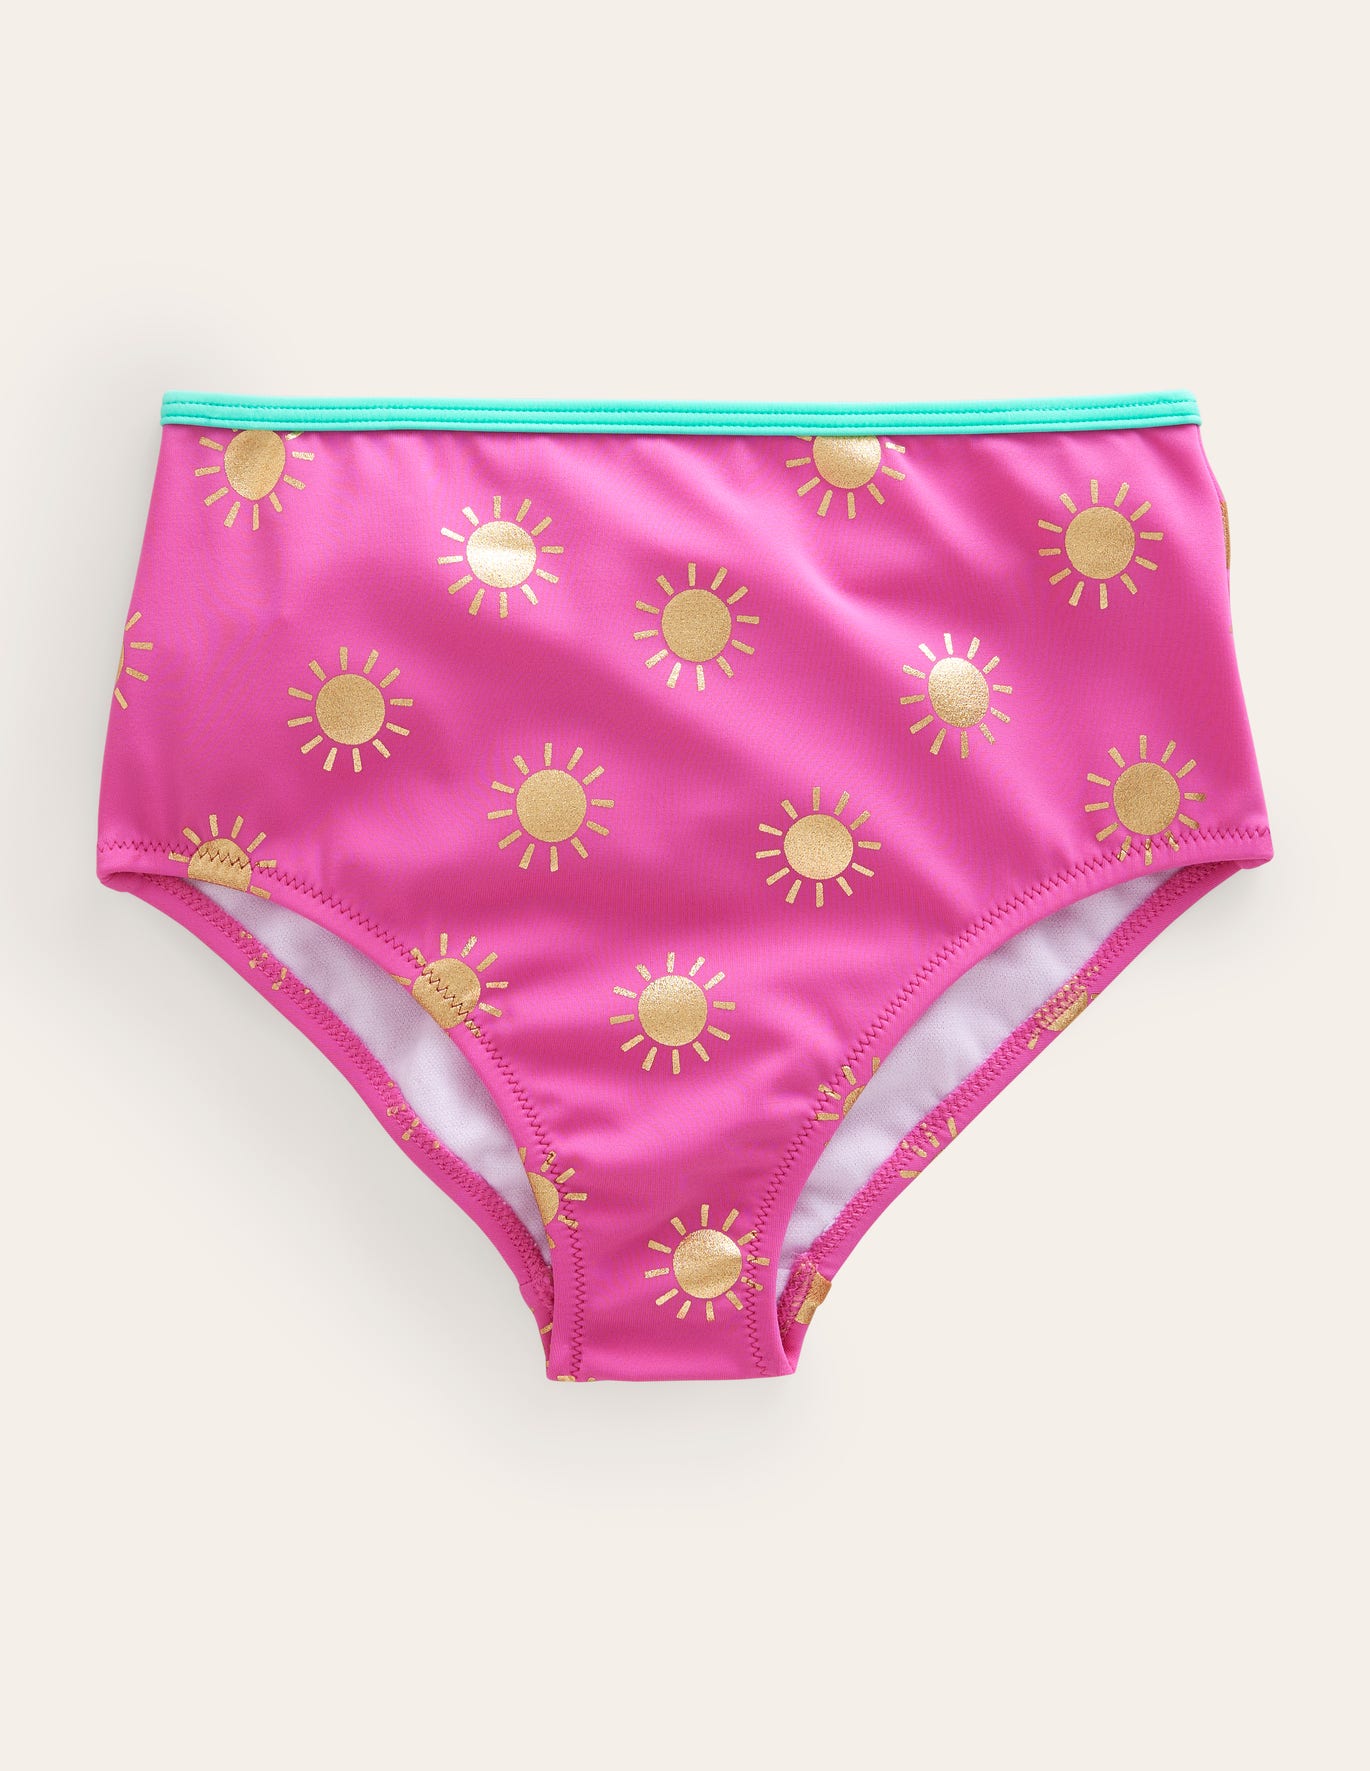 Boden High Waisted Bikini Bottoms - Tickled Pink Gold Foil Suns